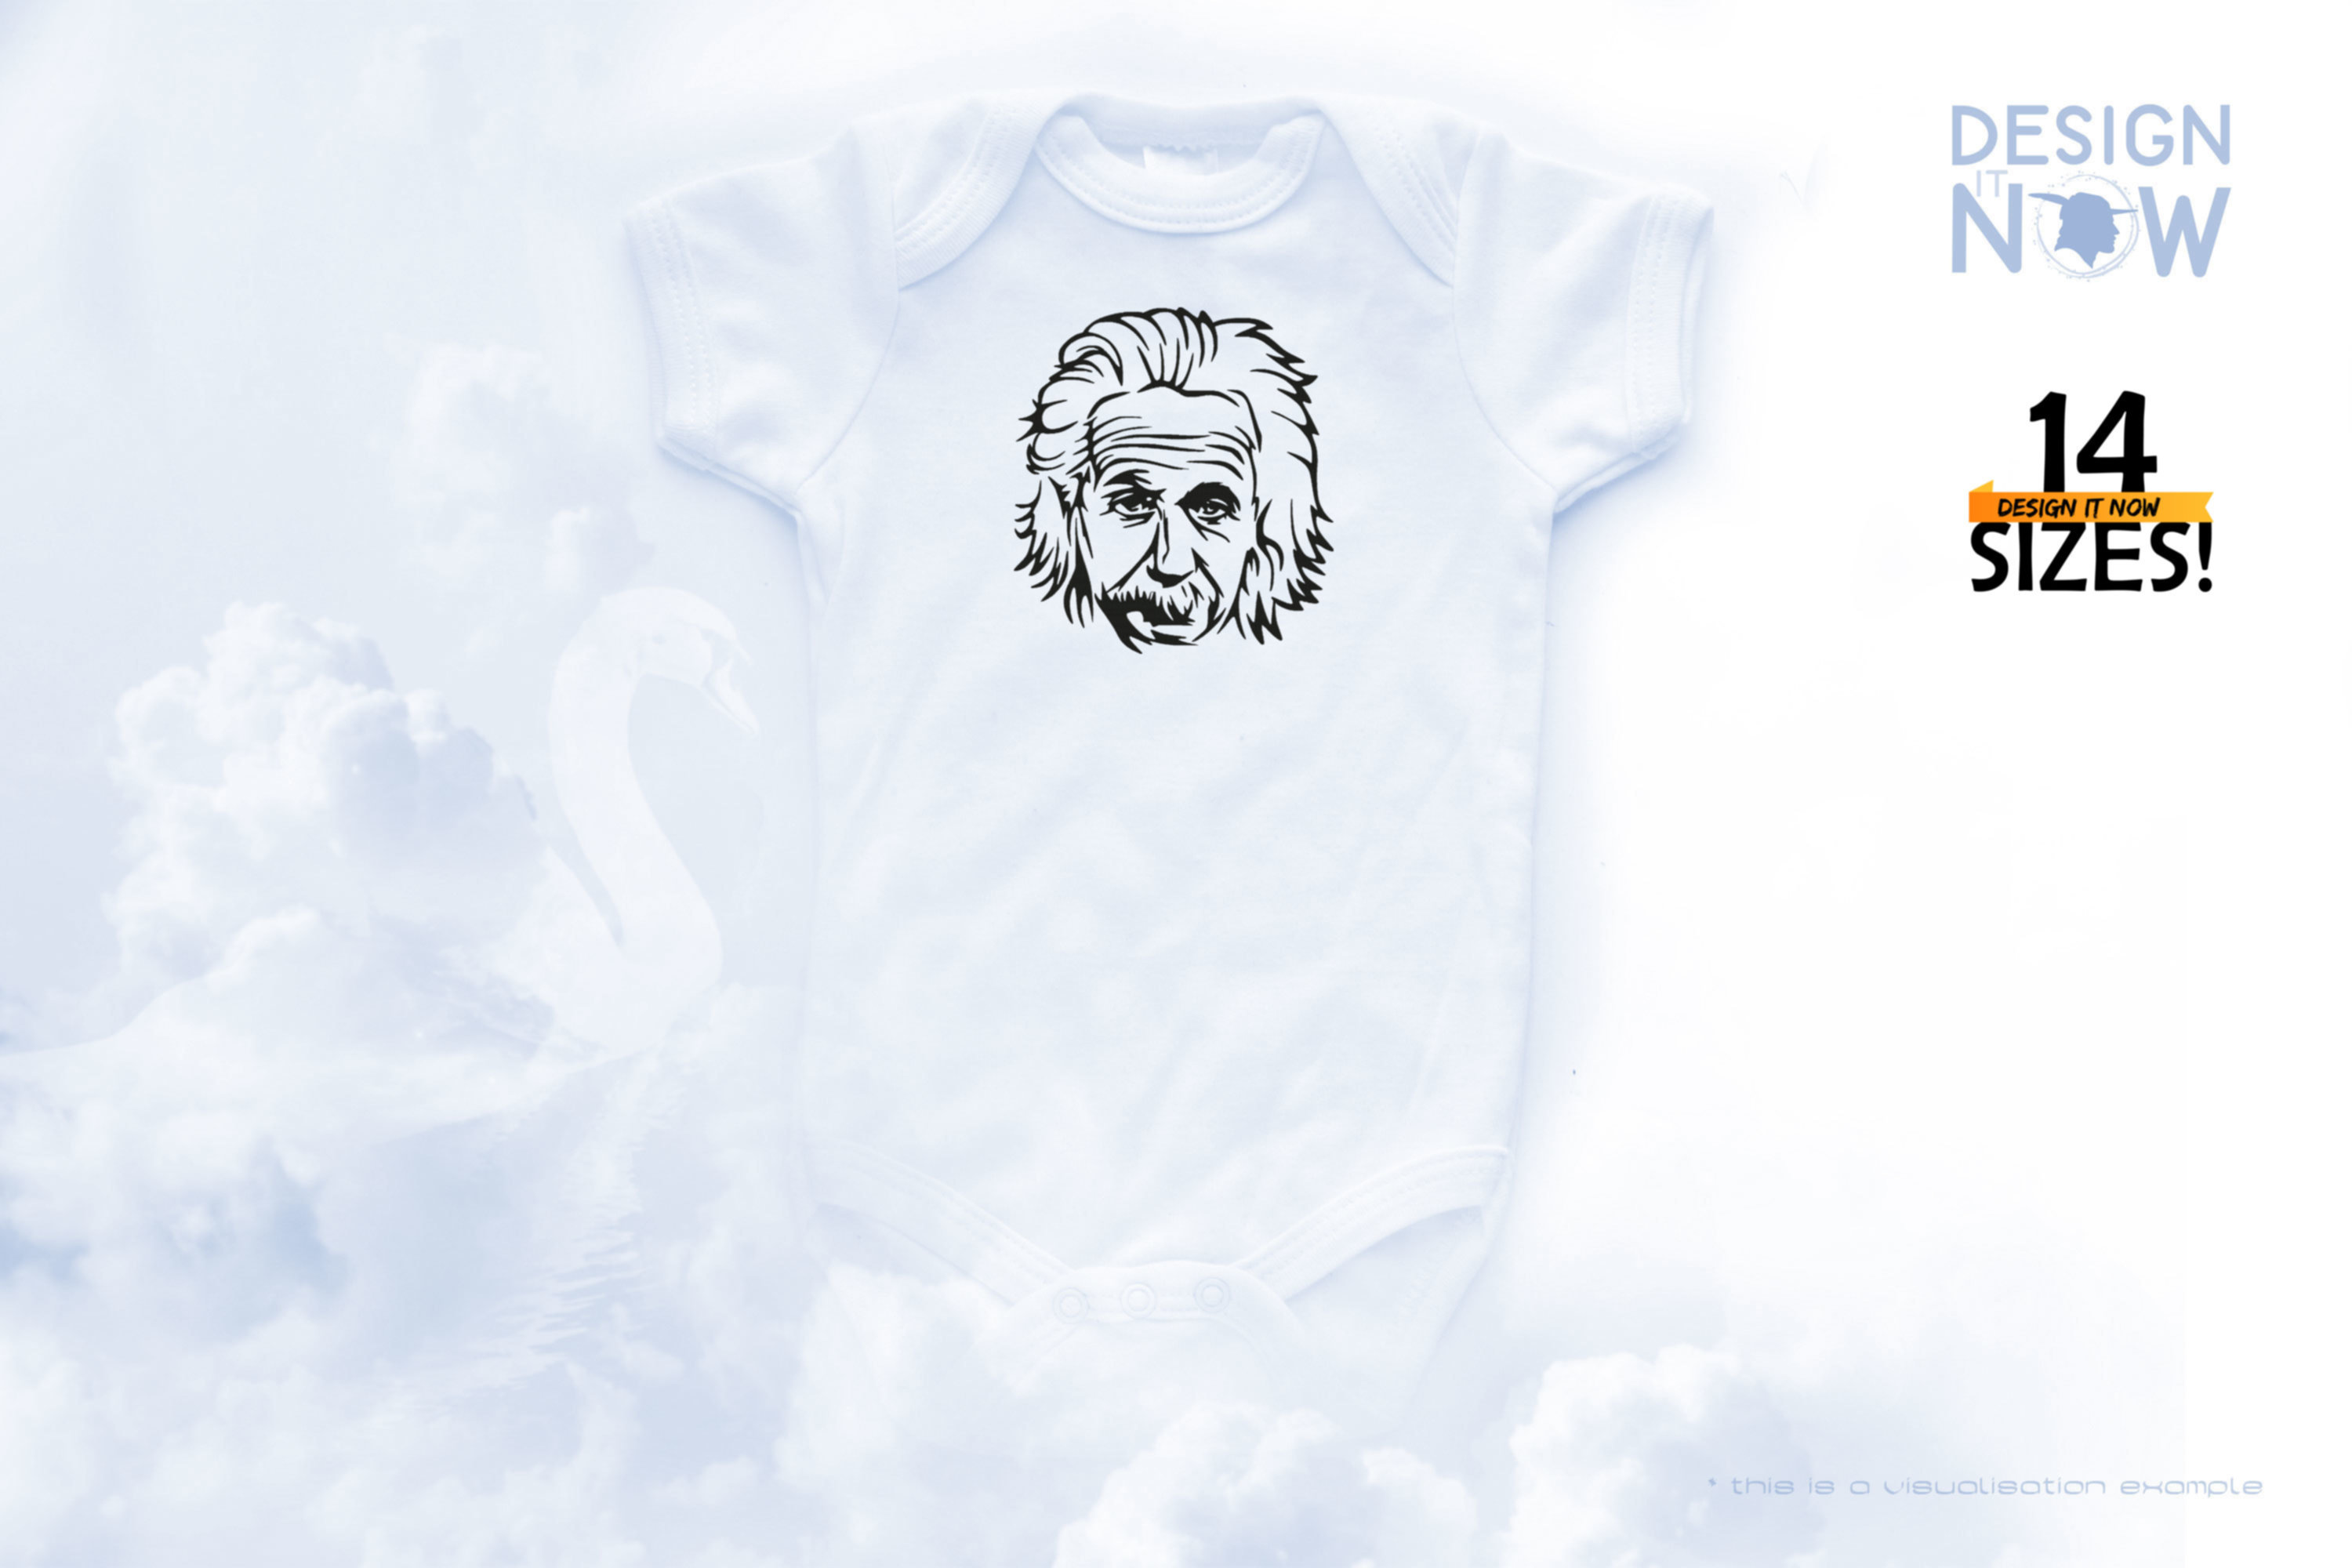 Tribute To Physicist A. Einstein aka Albert Einstein II